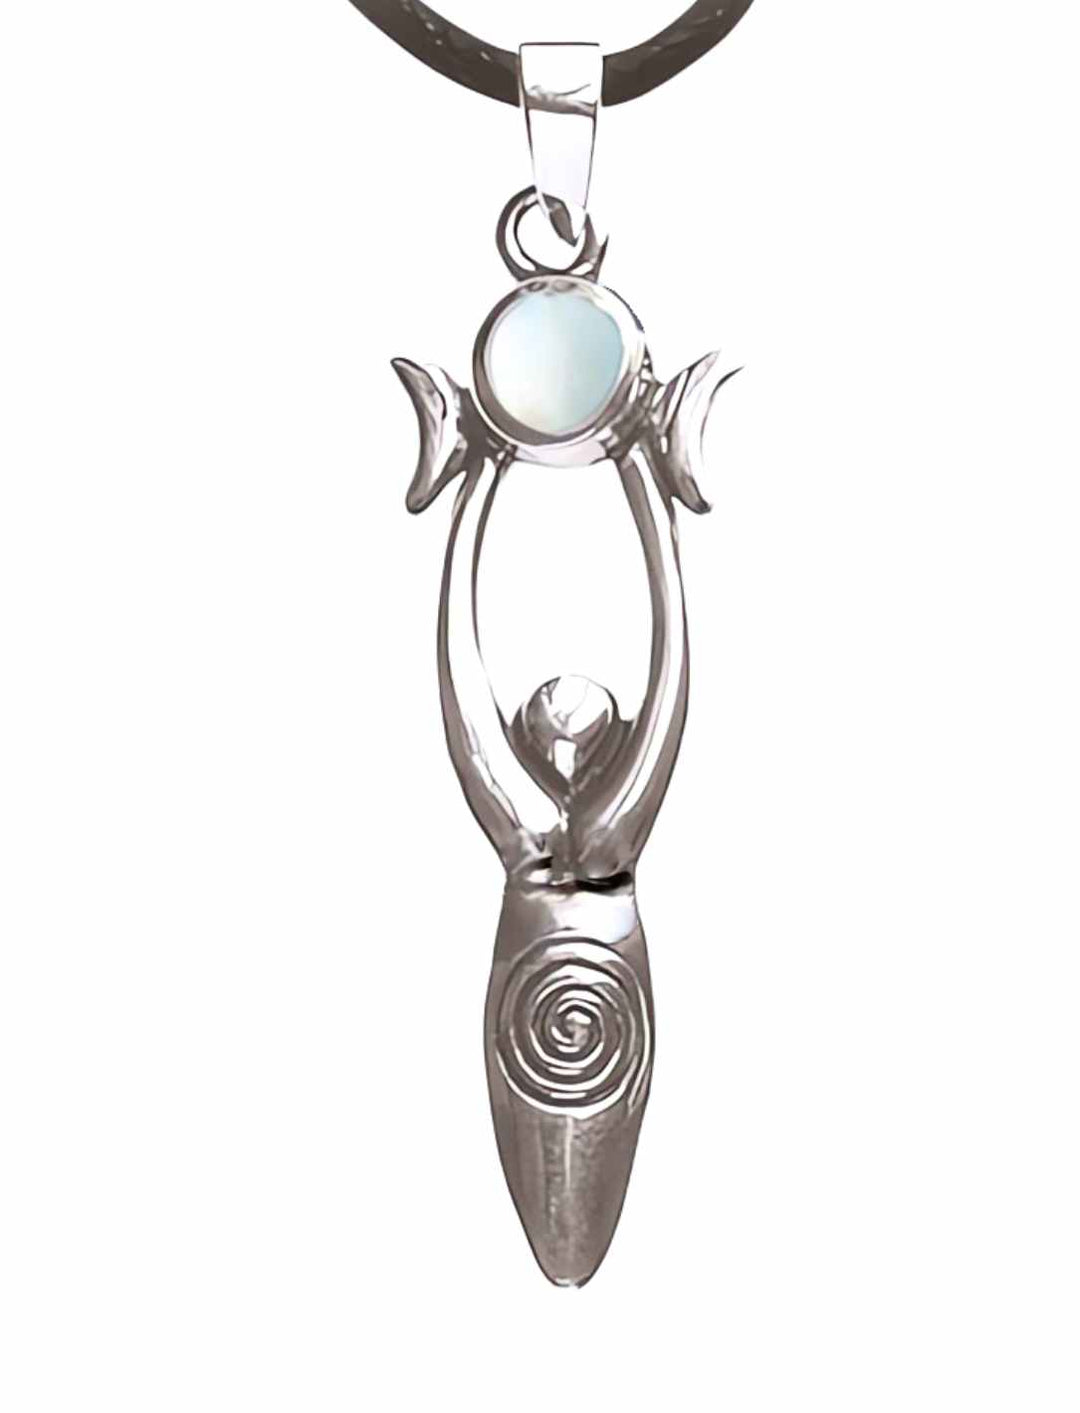 Nachtgesang der Circe – Eleganter 925 Sterling Silberanhänger mit Perlmutteinlage, inspiriert von der griechischen Göttin des Mondes, auf weißem Hintergrund.